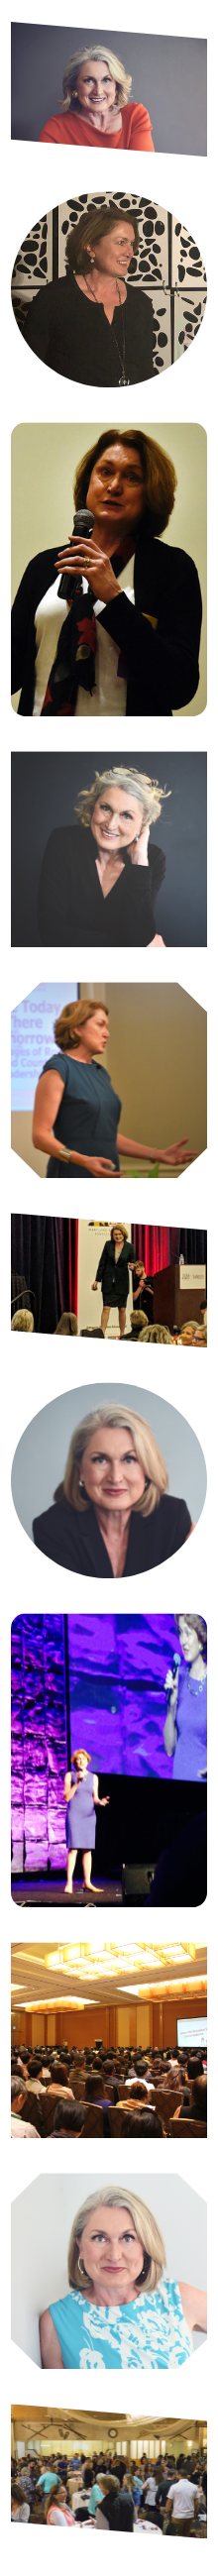 Powerful Woman Leadership Speaker Liz Weber Speaking Collage